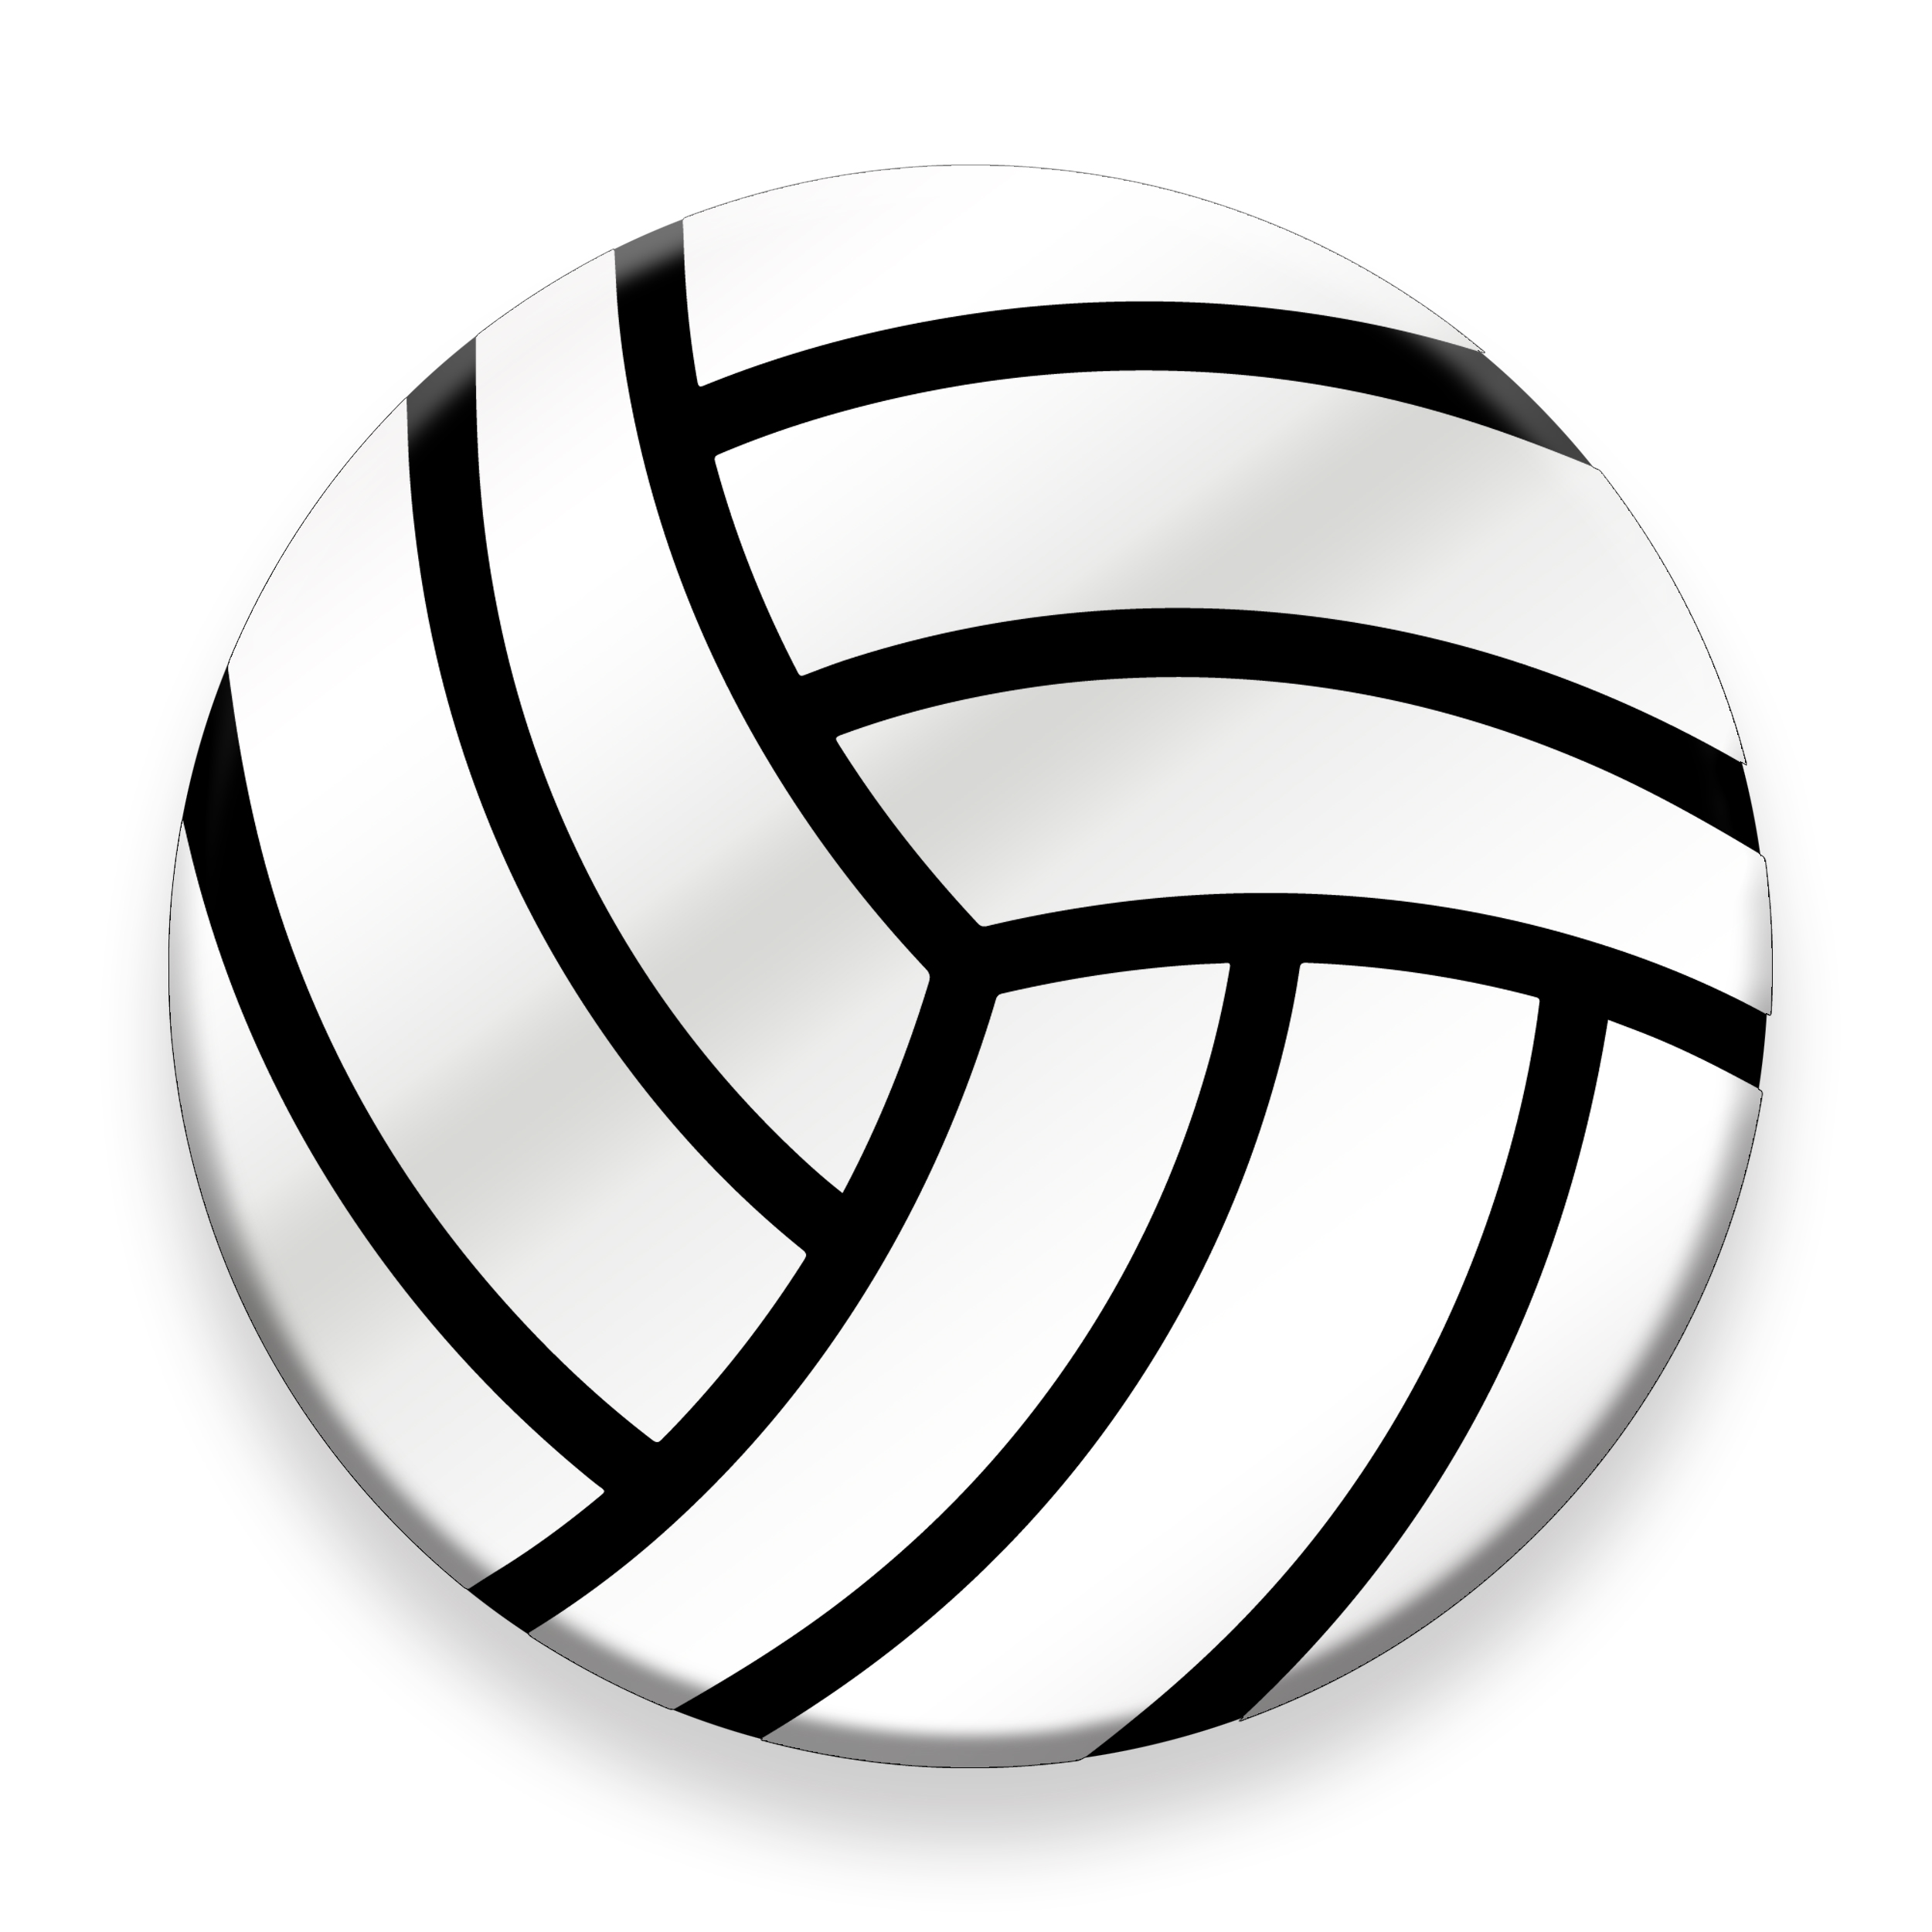 برچسب موبایل مدل Volleyball مناسب برای پایه نگهدارنده مغناطیسی